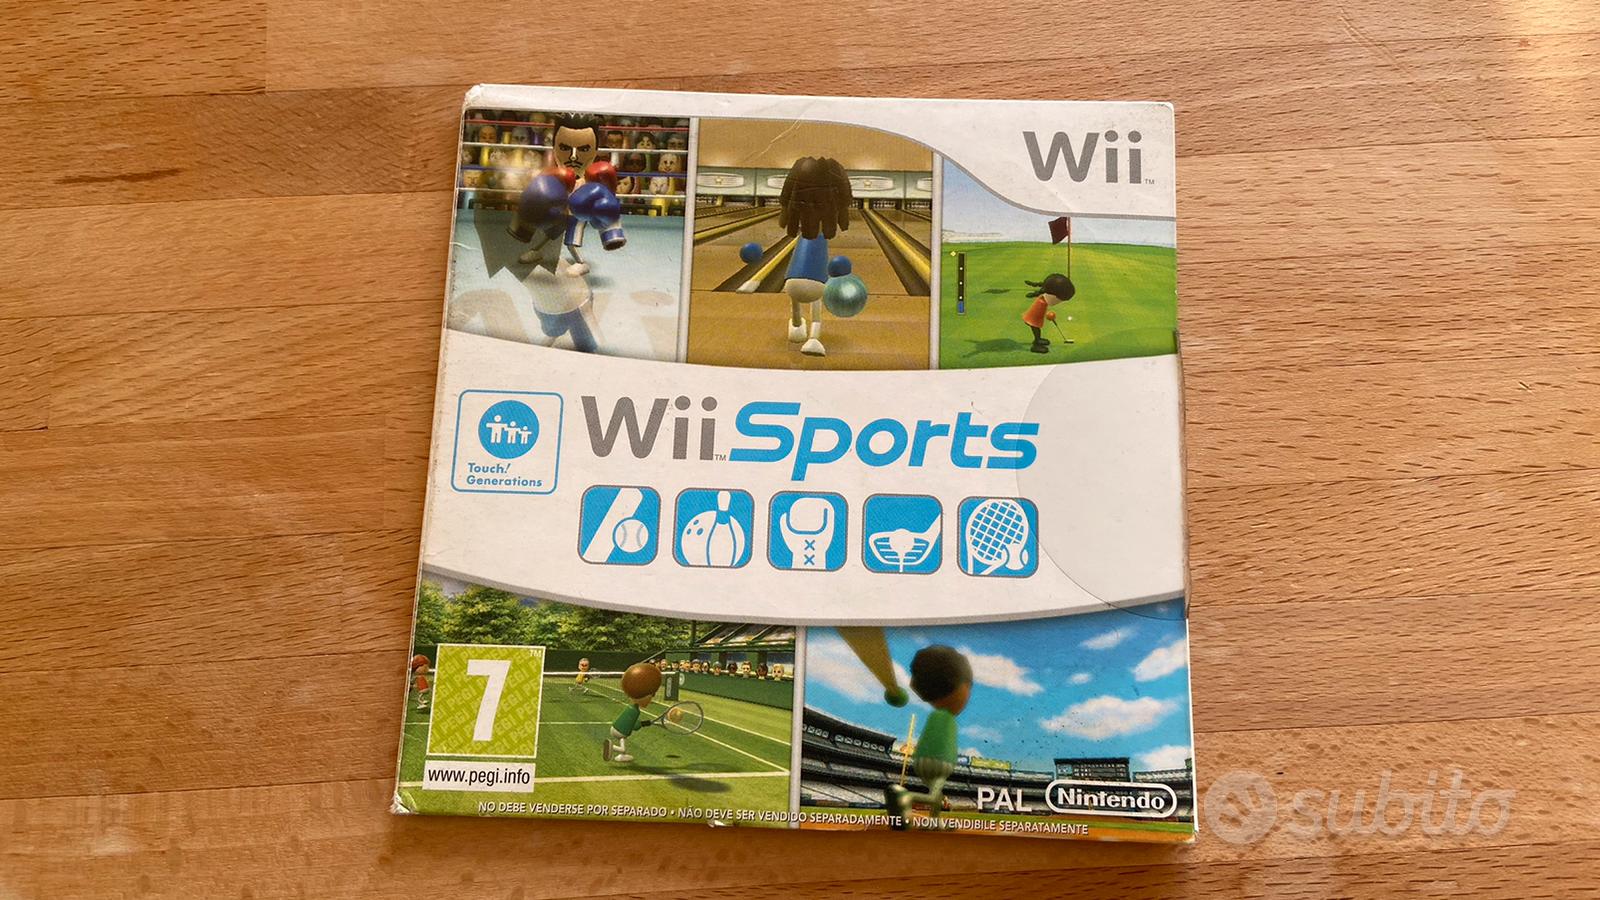 Wii Sports - Console e Videogiochi In vendita a Pistoia